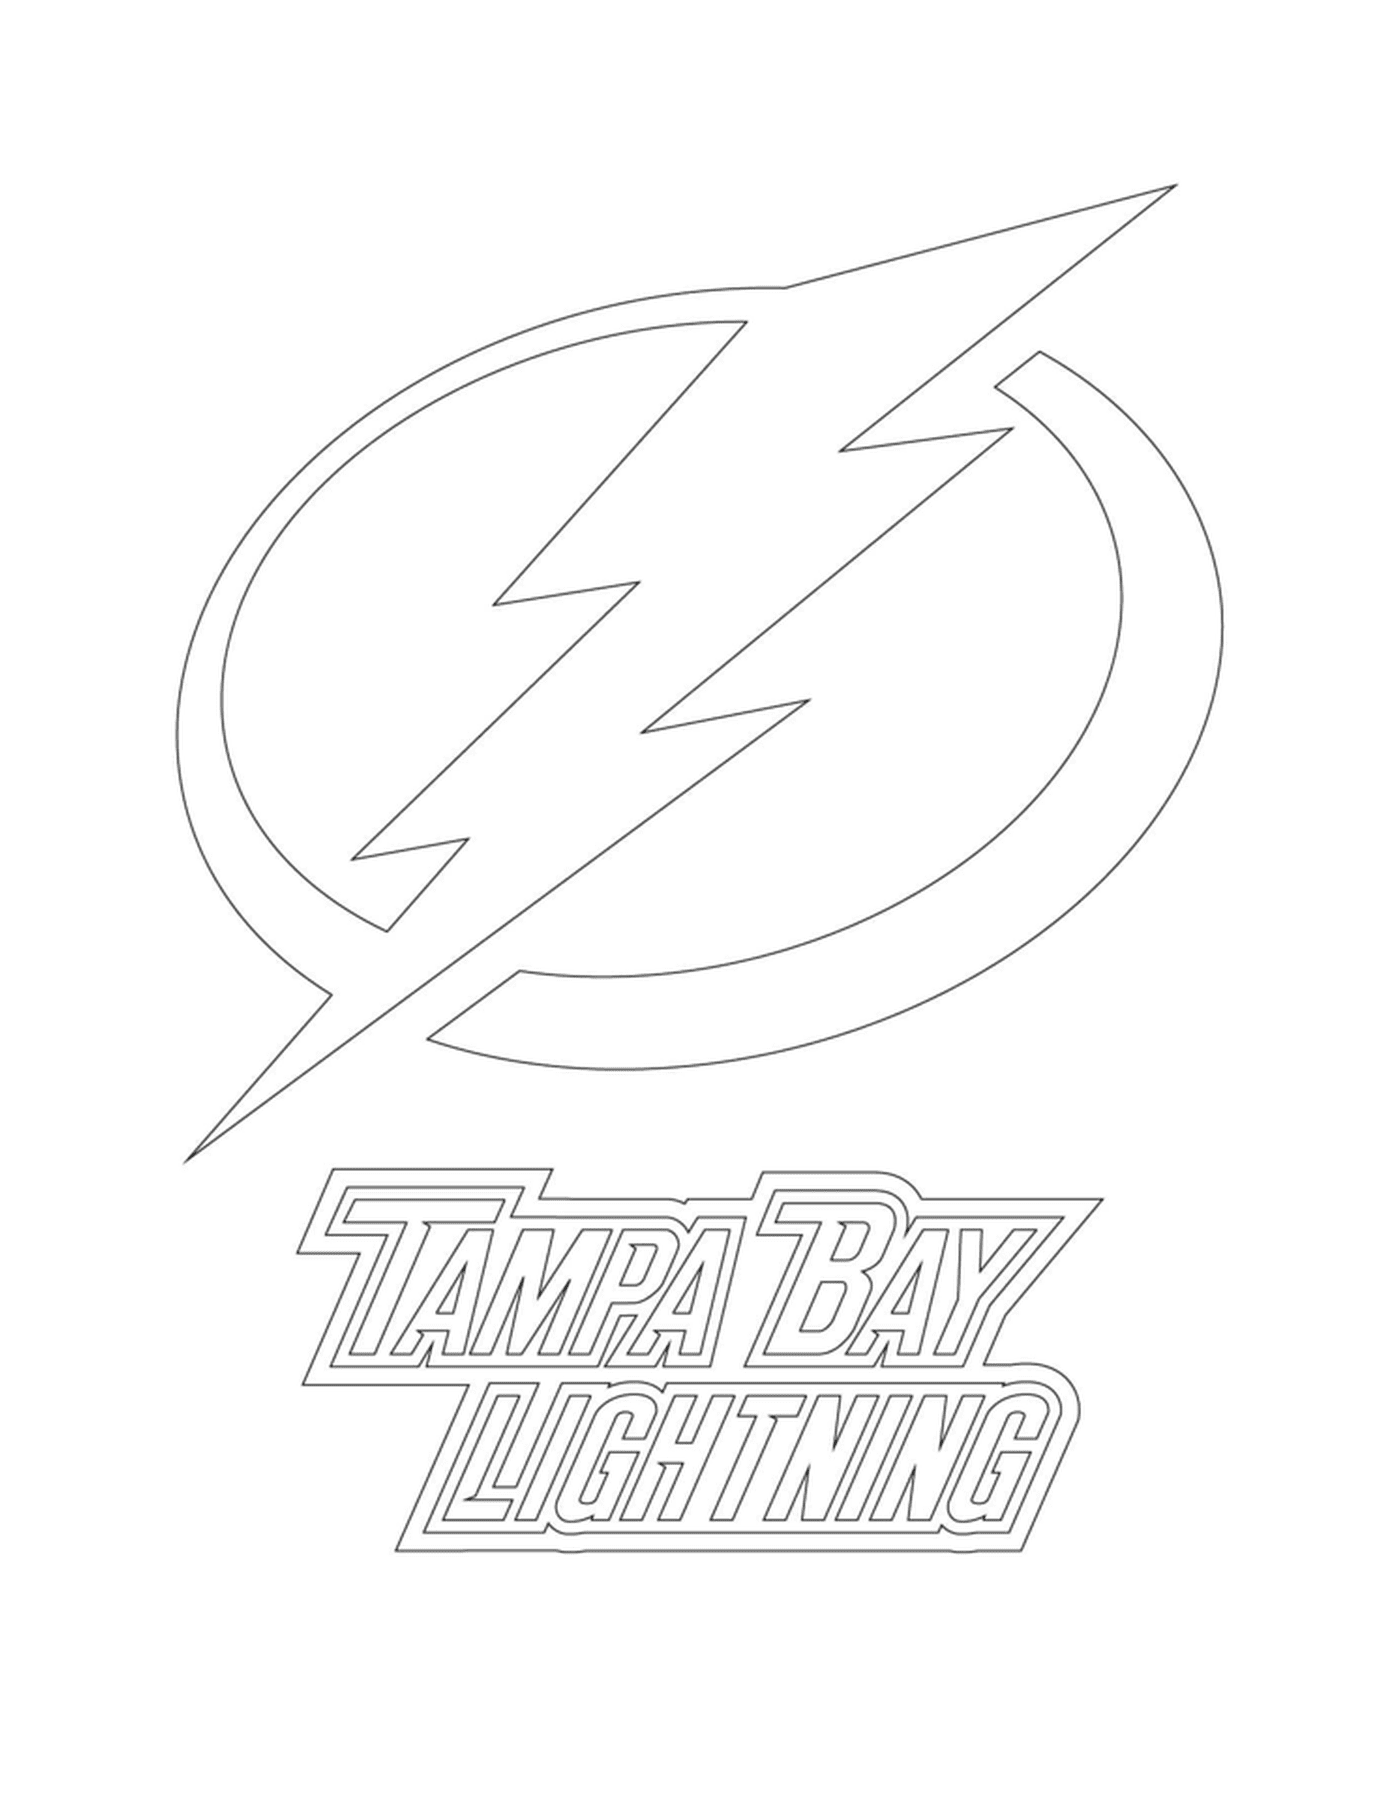  Tampa Bay Lightning 路标 